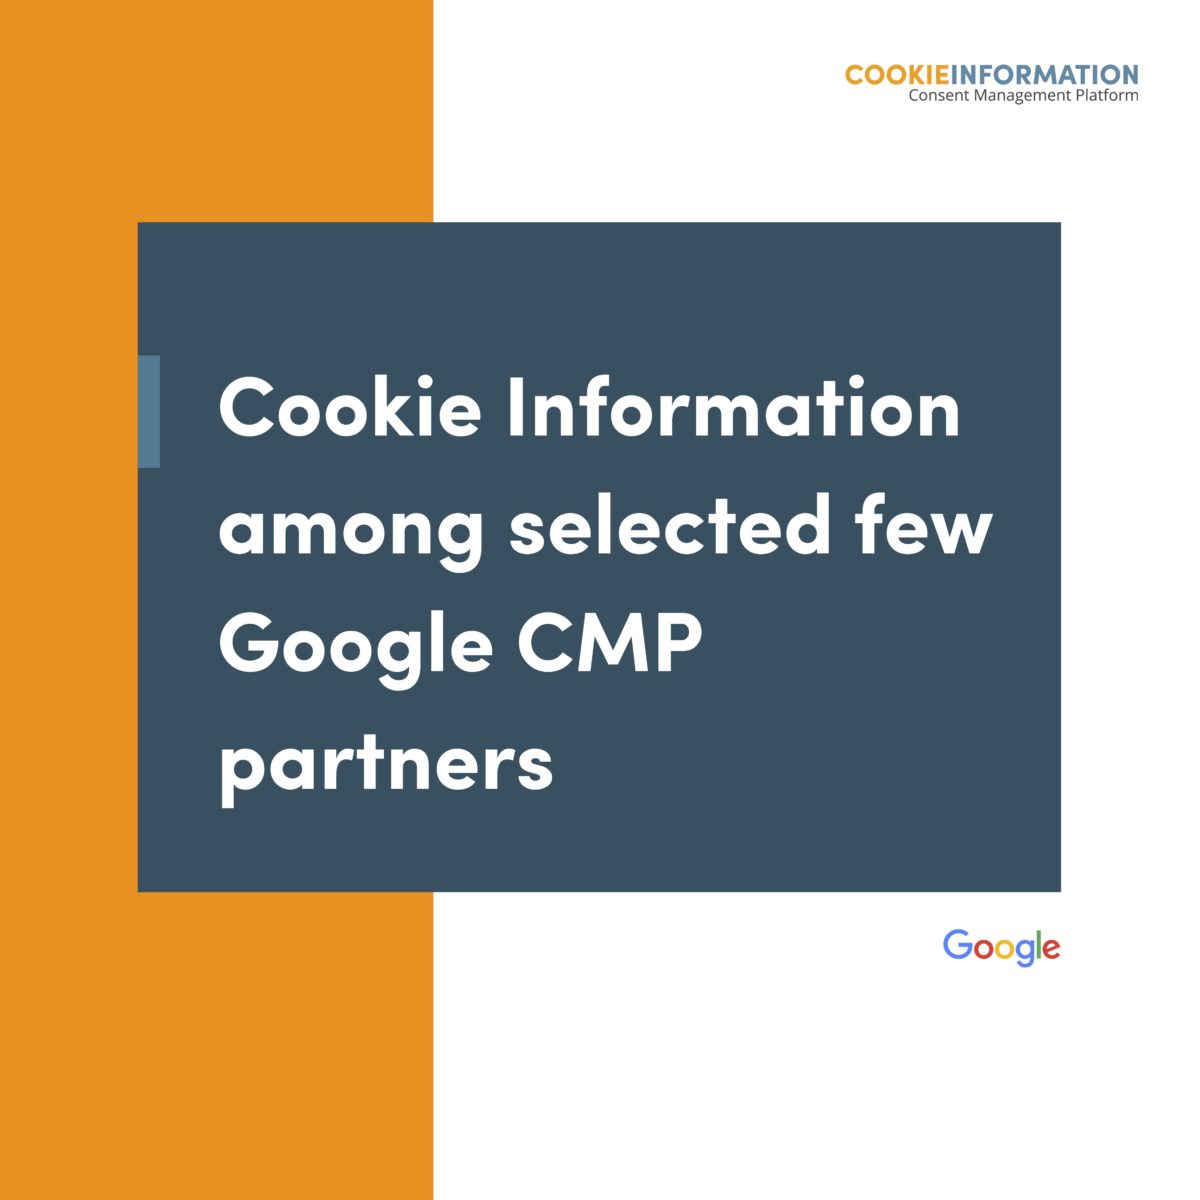 Cookie Information parmi les partenaires sélectionnés de Google Consent Management Platform